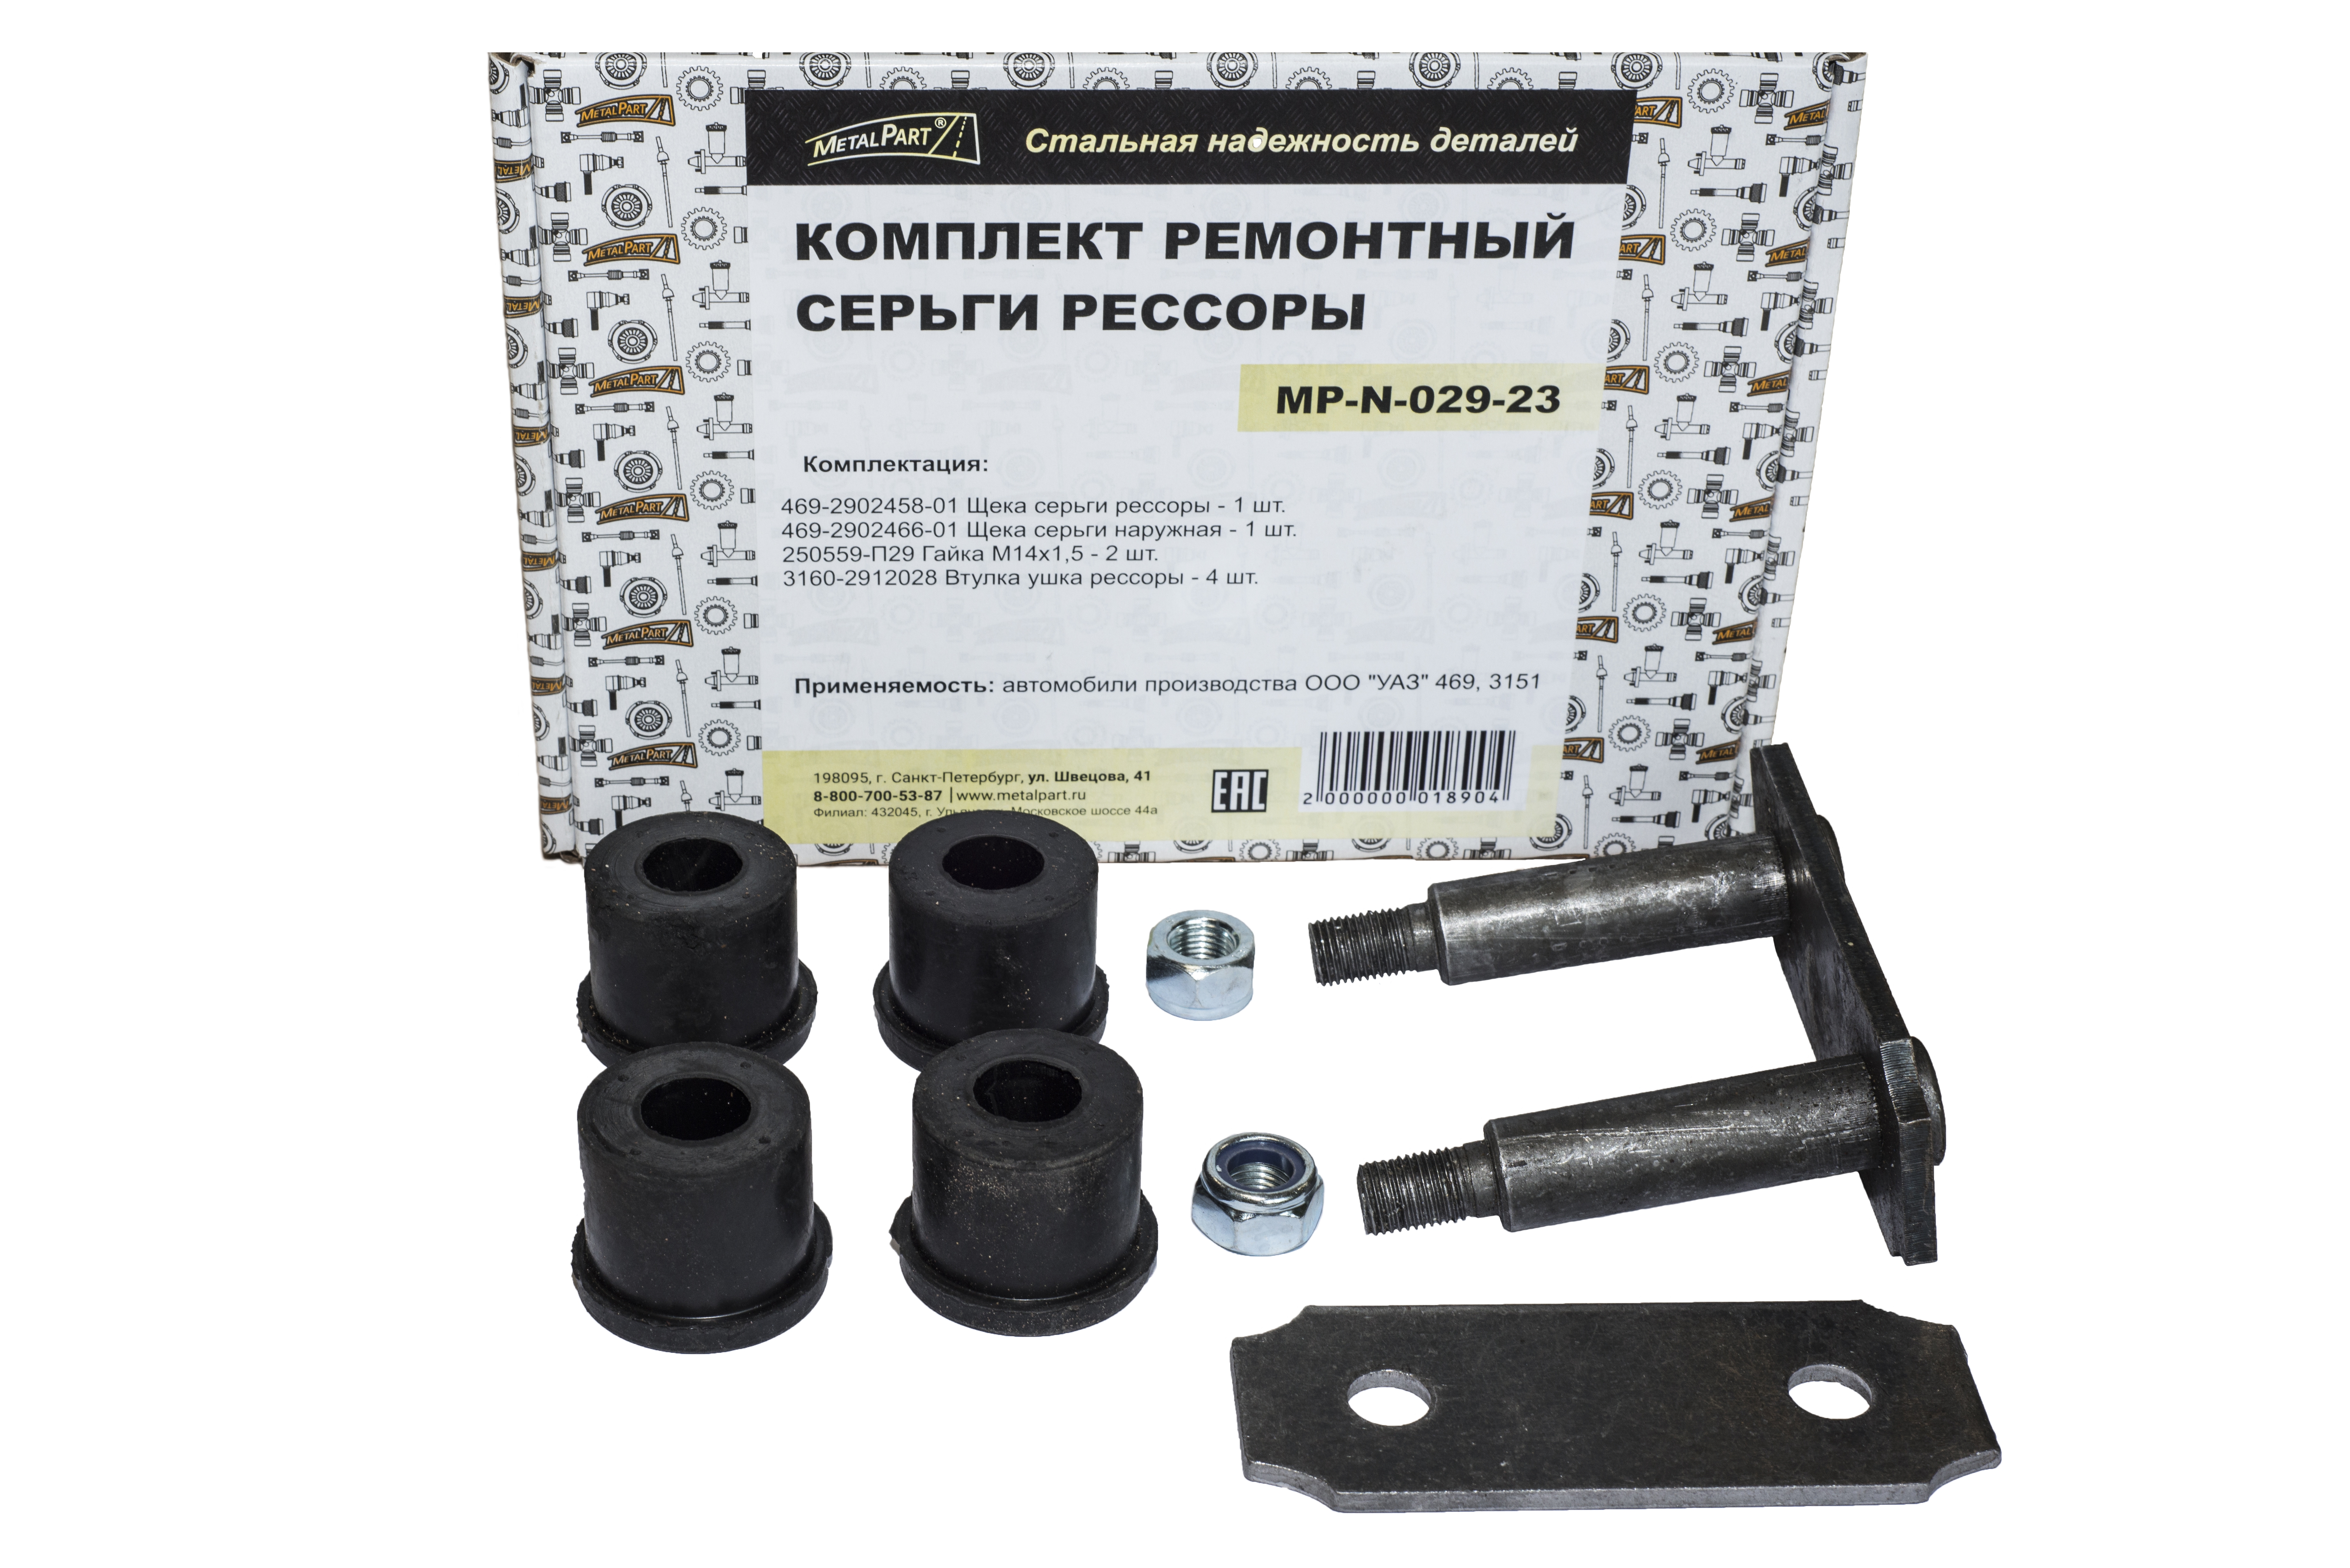 Комплект ремонтный серьги рессоры УАЗ 469